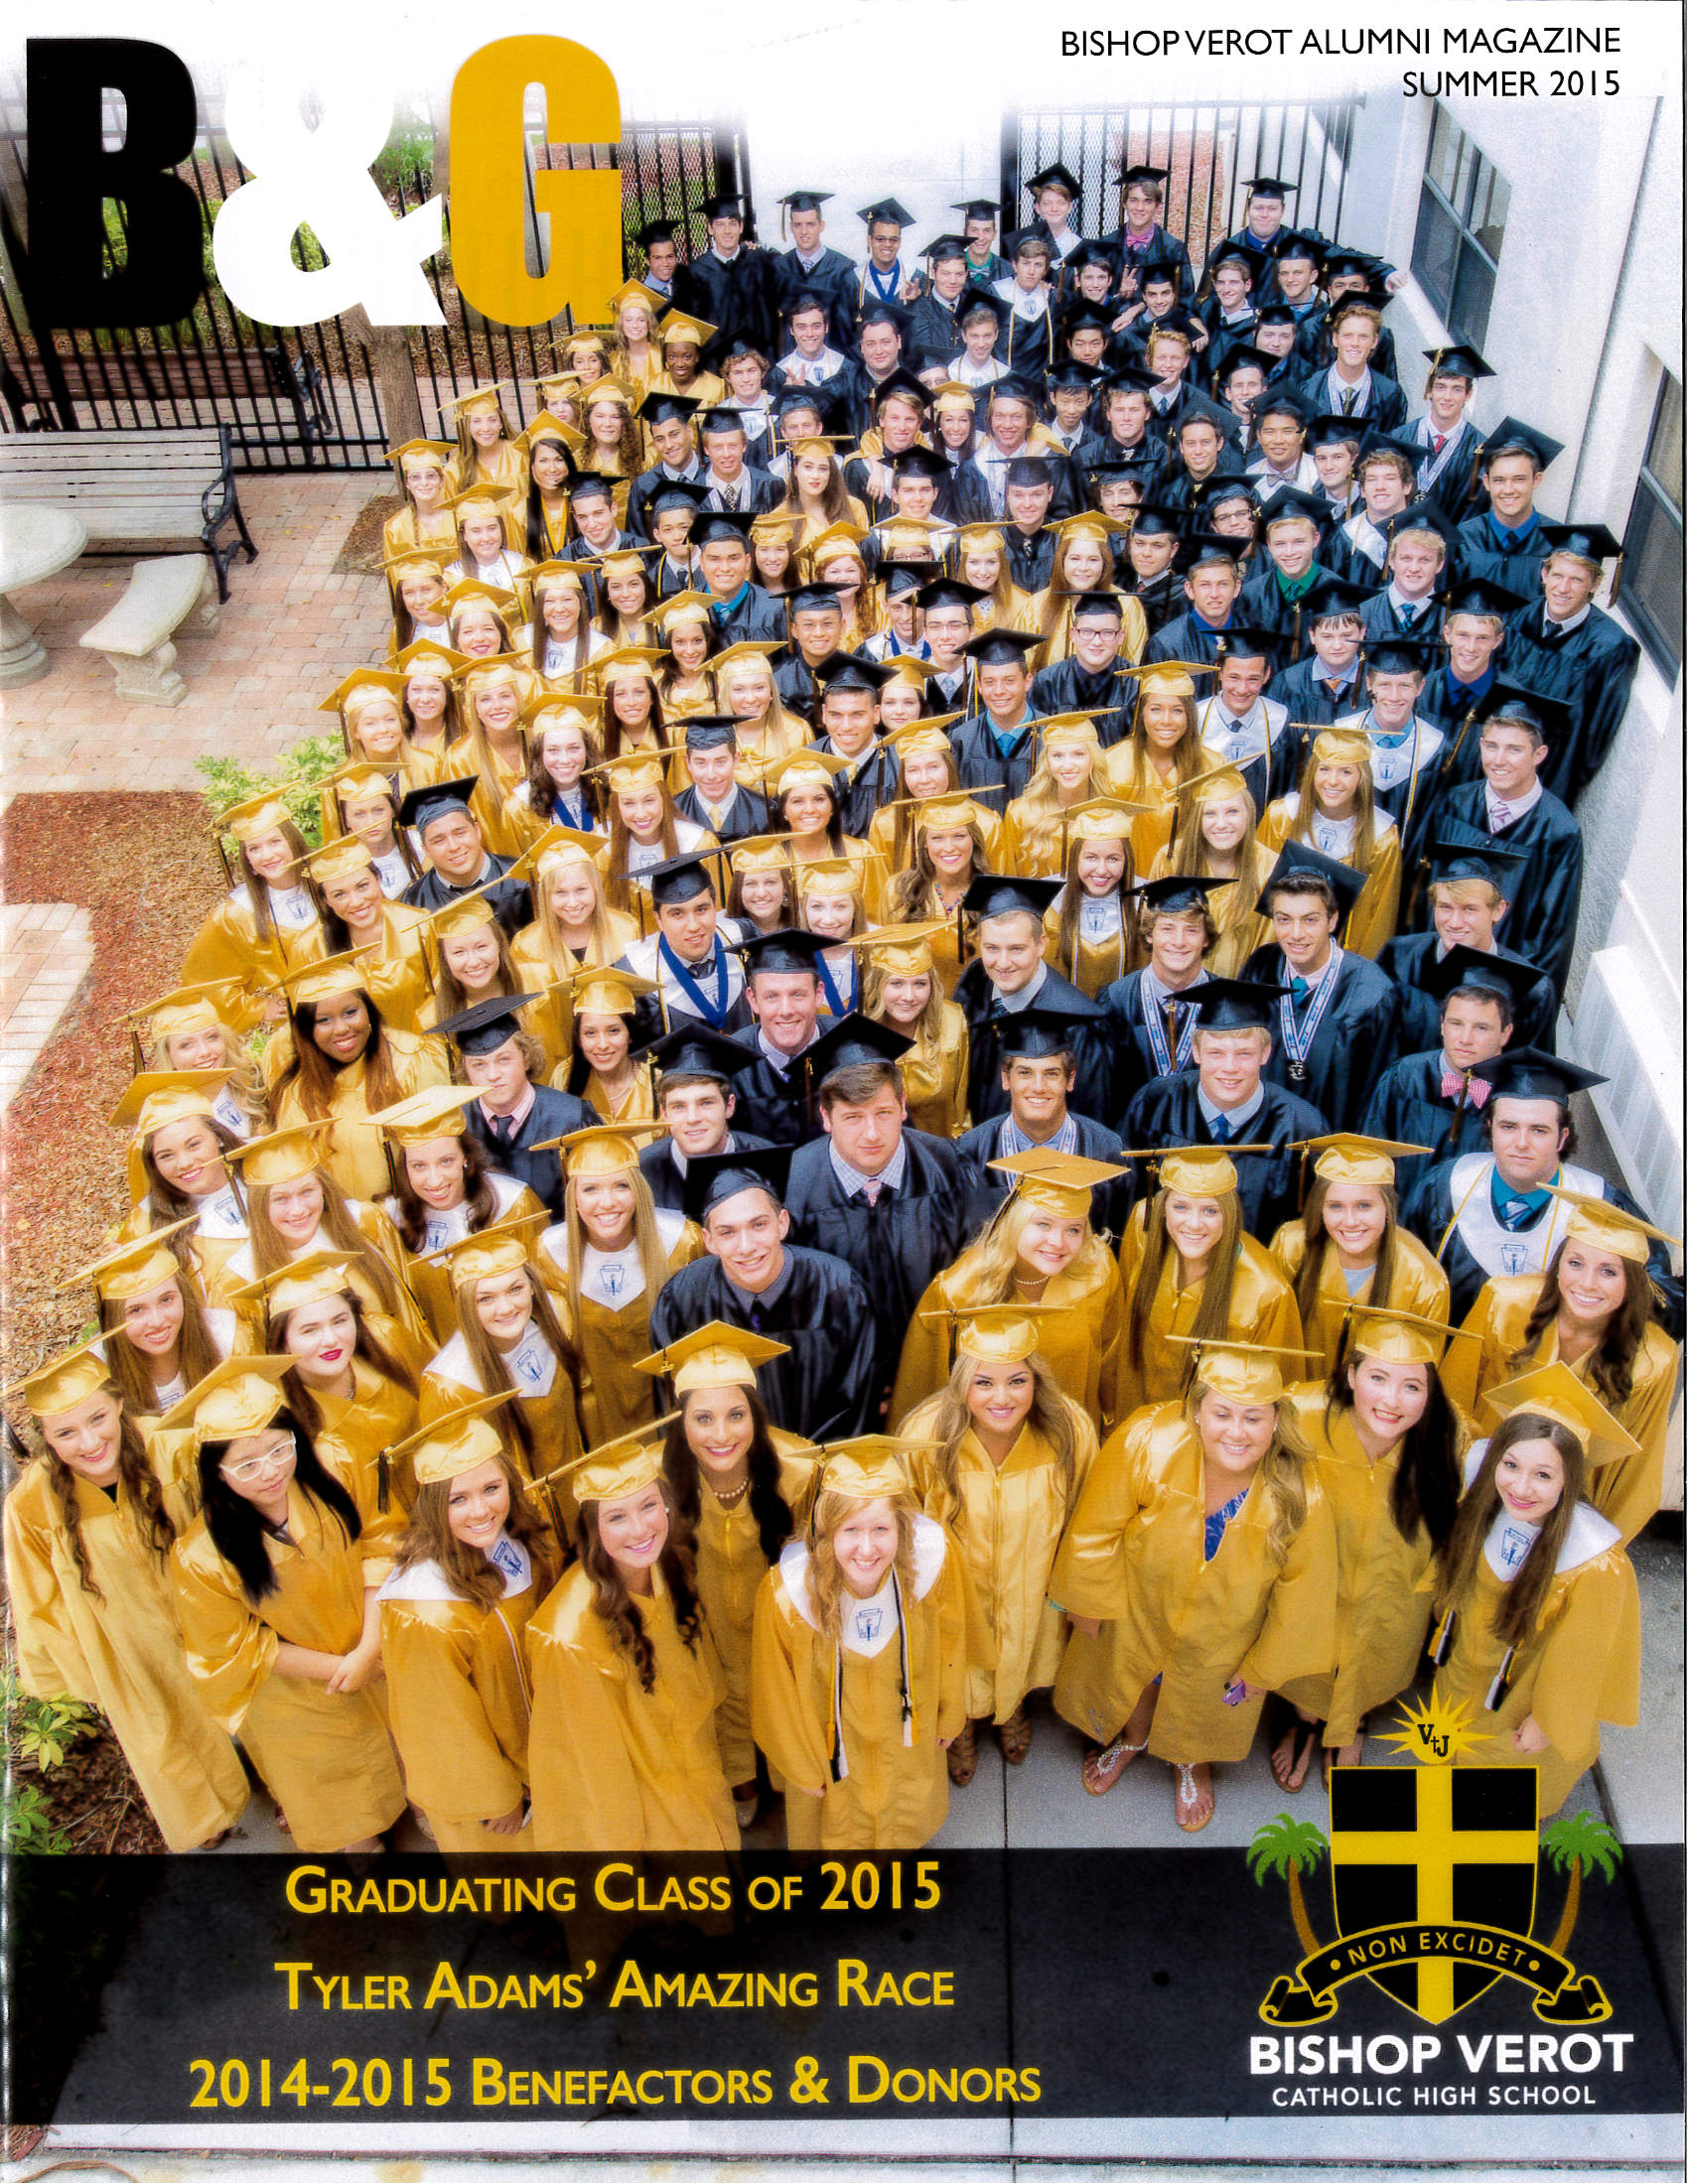 B&G Alumni Magazine Summer 2015 